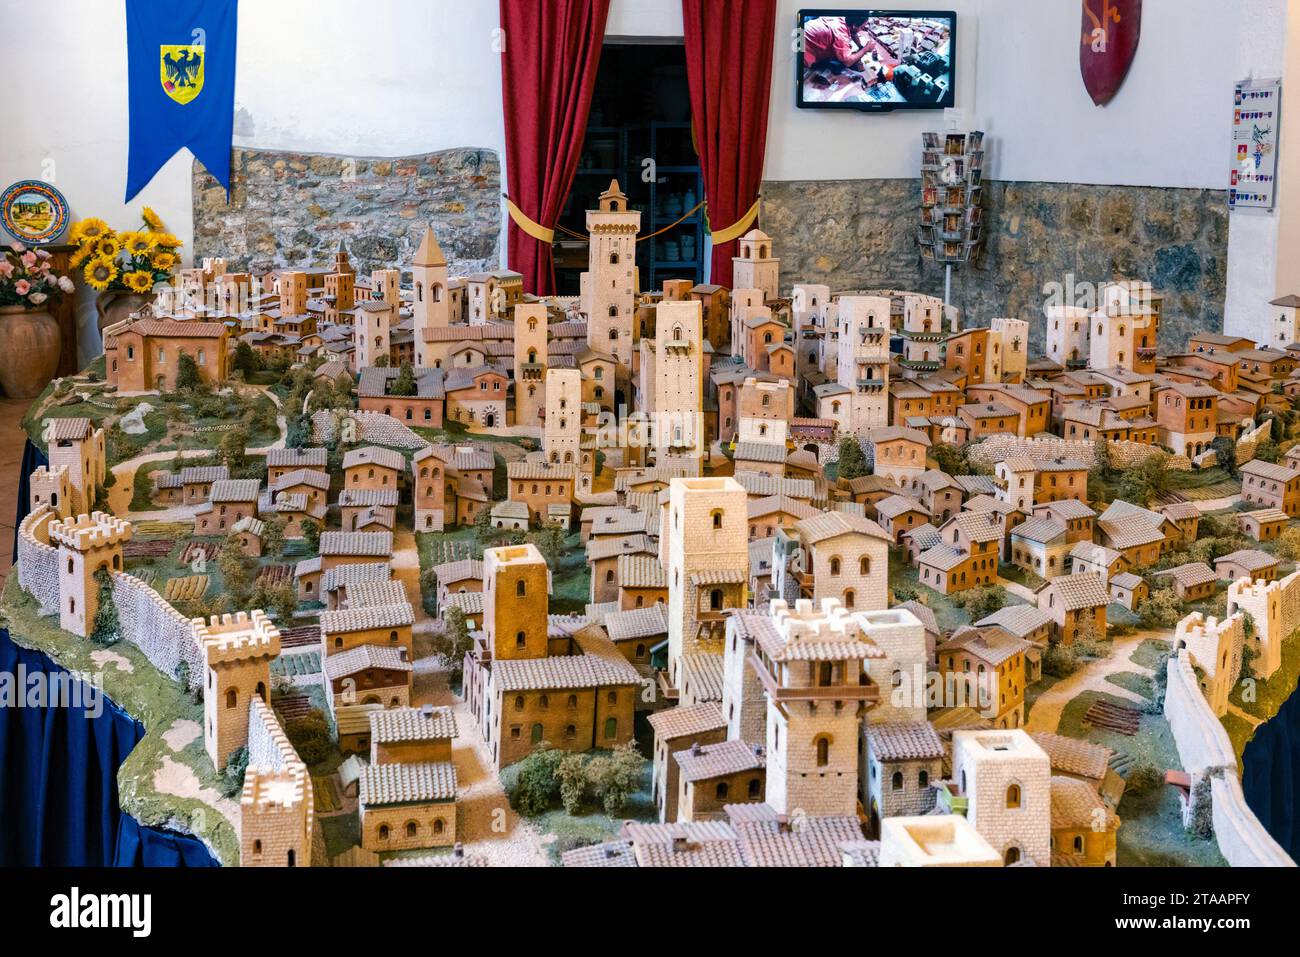 Terracotta model of city, San Gimignano, Tuscany, Italy Stock Photo